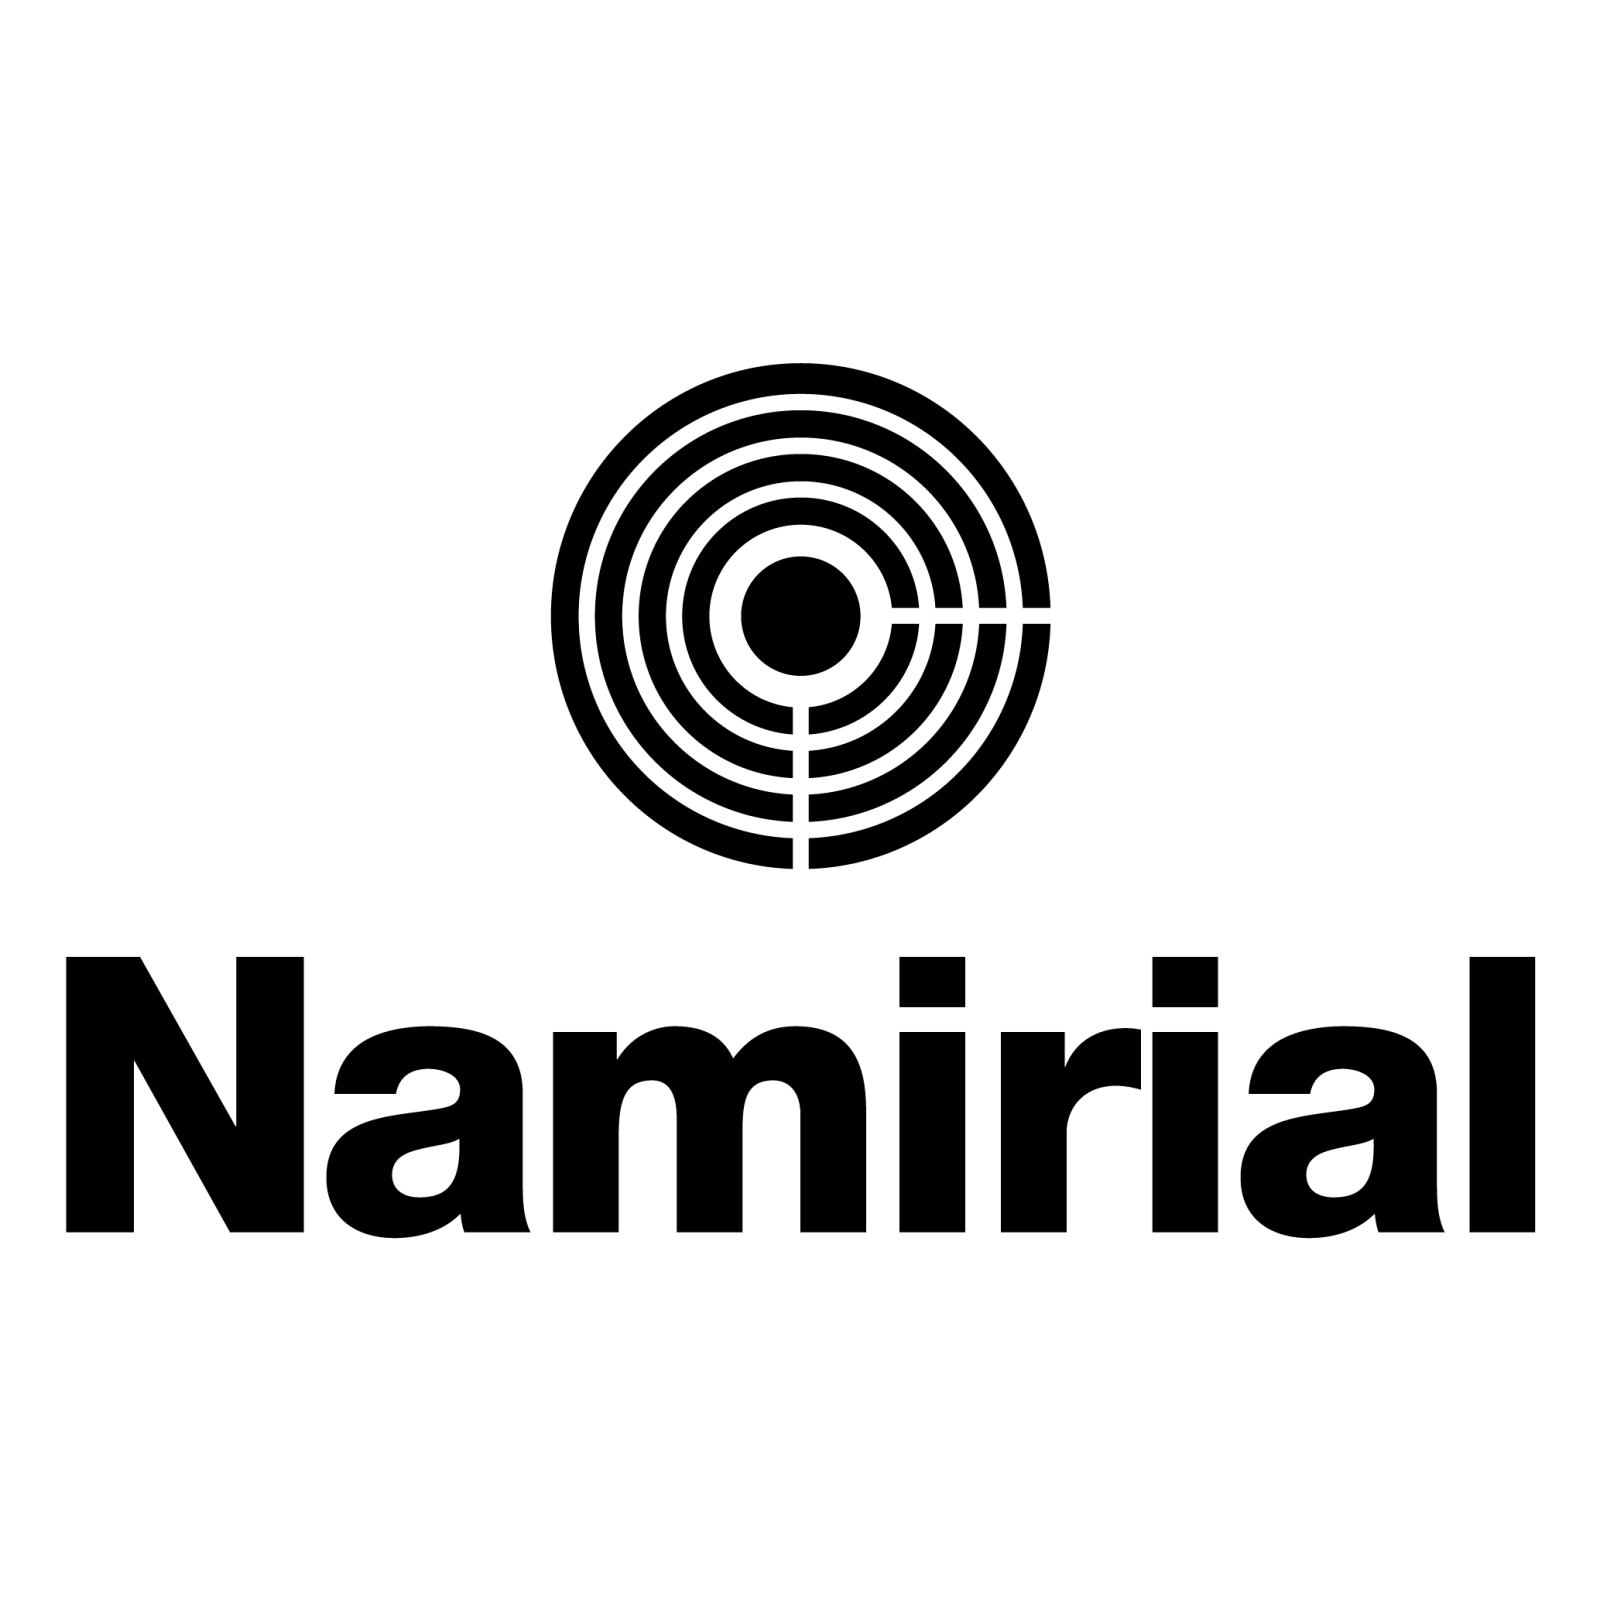 Logo Namirial spa